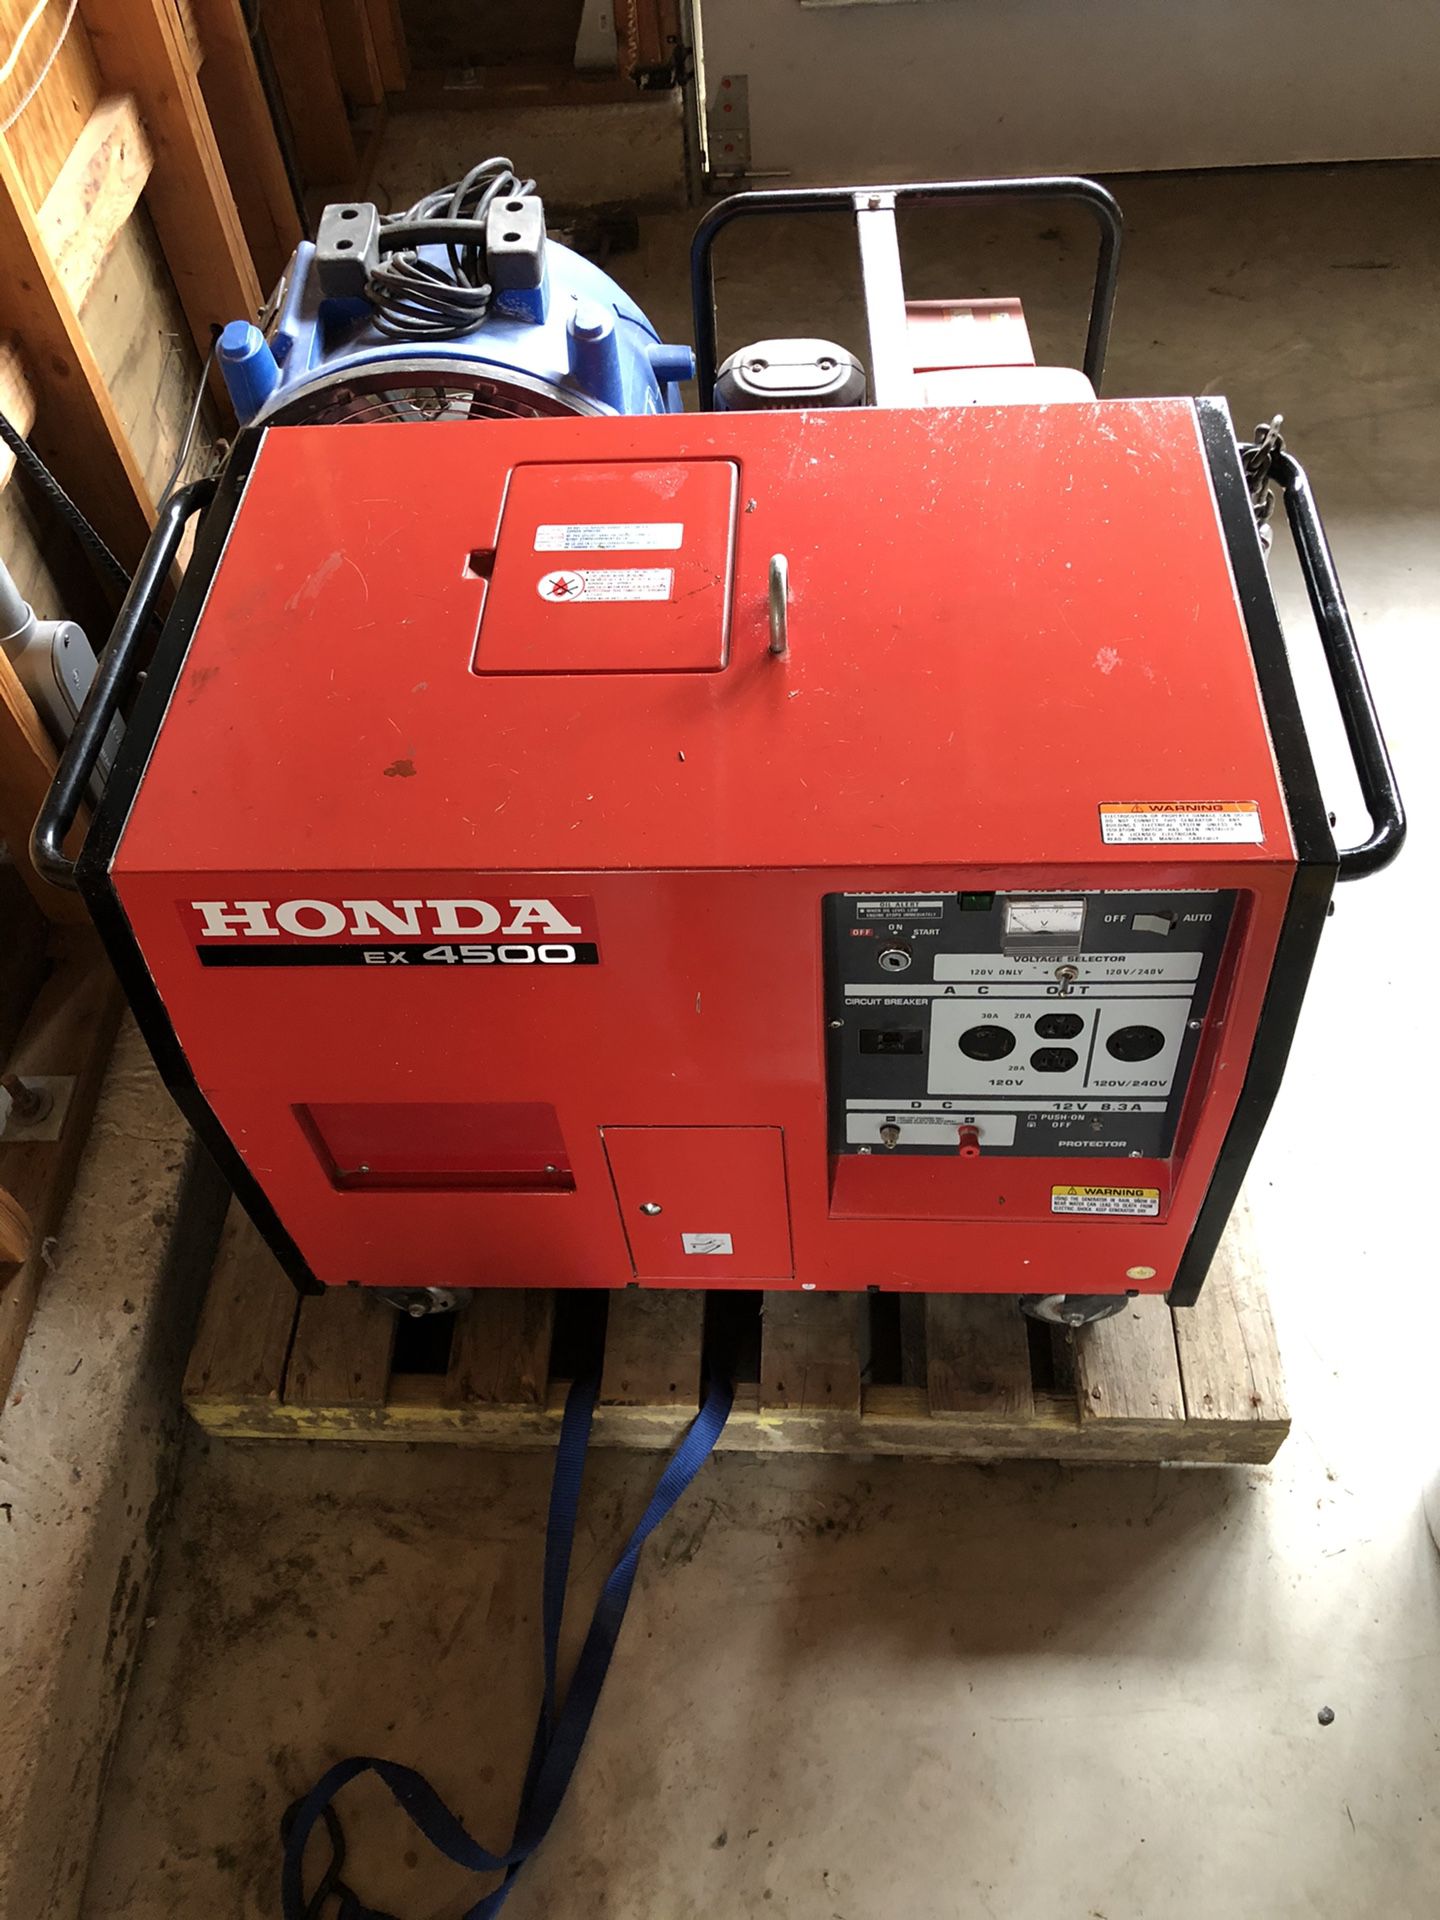 Honda Generator EX 4500 - VERY QUIET!!